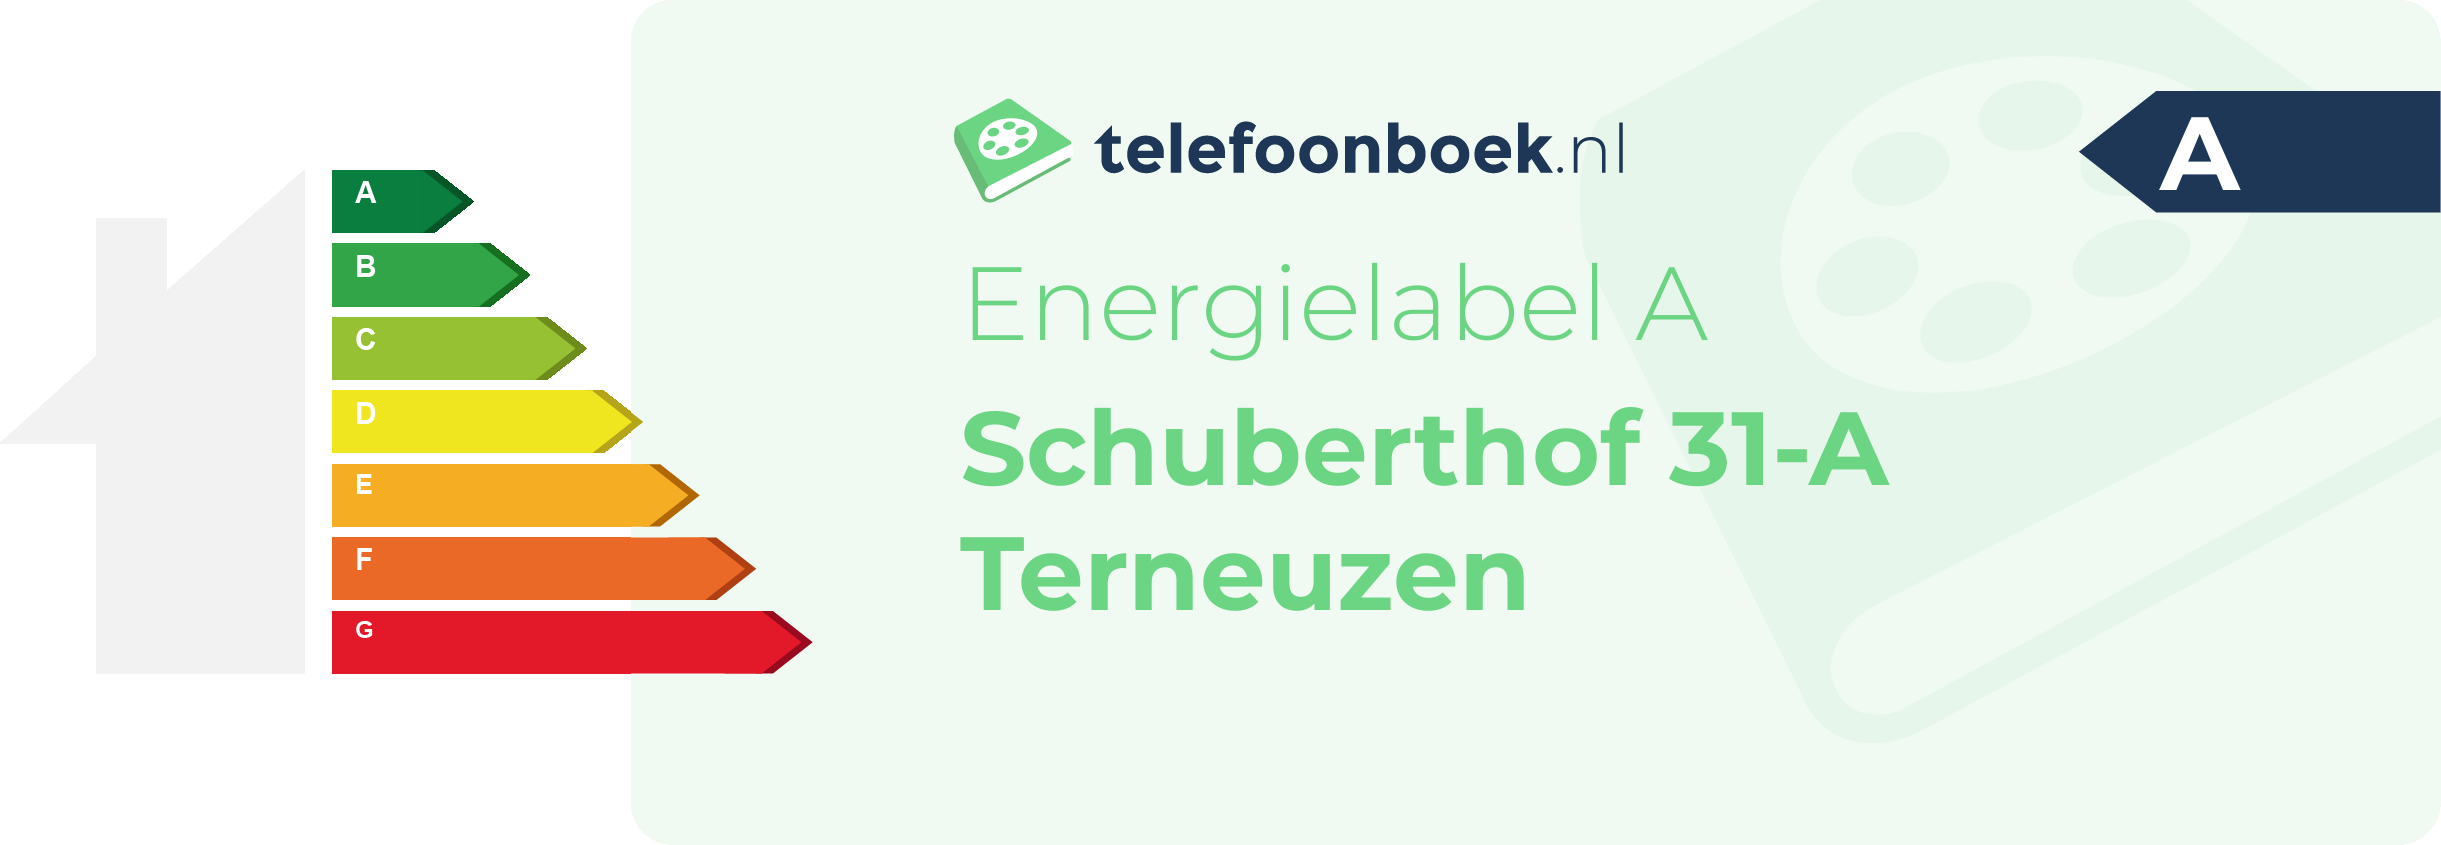 Energielabel Schuberthof 31-A Terneuzen